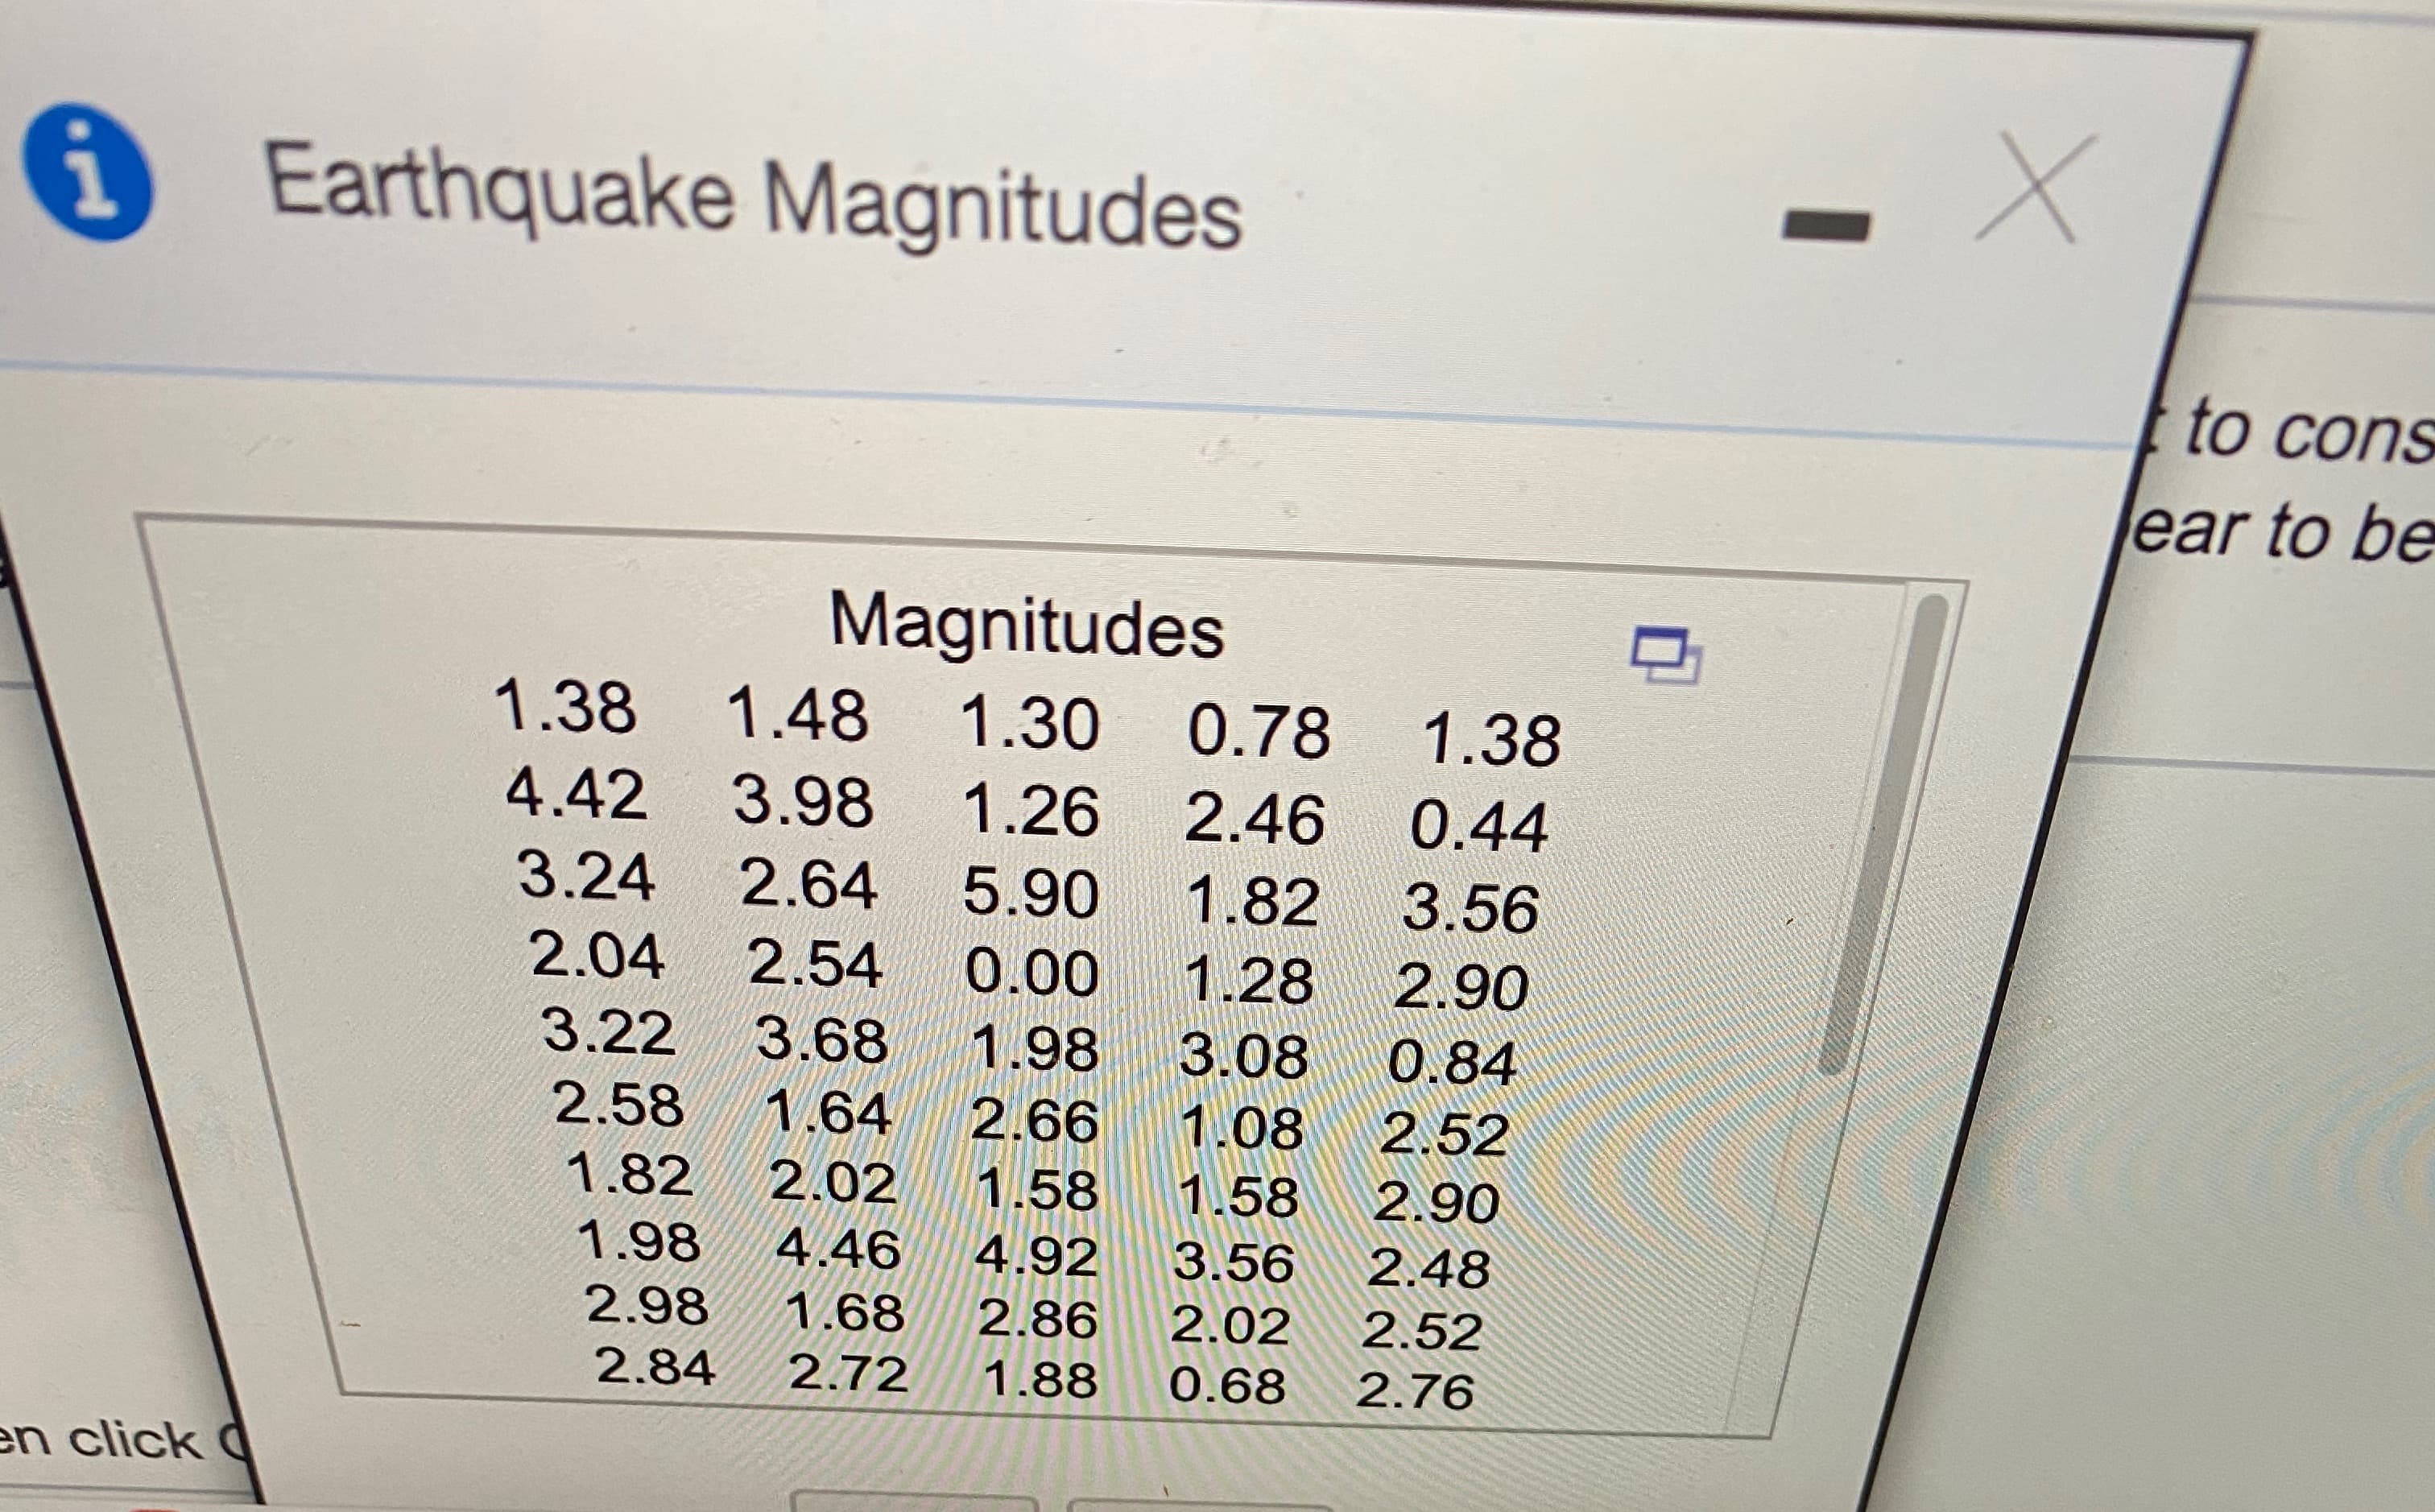 Earthquake Magnitudes
to cons
ear to be
Magnitudes
1.38 1.48
1.30 0.78 1.38
4.42 3.98 1.26 2.46
0.44
3.24
2.64 5.90
1.82
3.56
2.04
2.54
0.00
1.28
2.90
3.22
3.68 1.98
3.08
0.84
2.58
1.64
2.66
1.08
2.52
1.82
2.02
1.58
1.58
2.90
1.98
4.46
4.92
3.56
2.48
2.98
1.68
2.86
2.02
2.52
2.84
2.72
1.88
0.68
2.76
en click C
